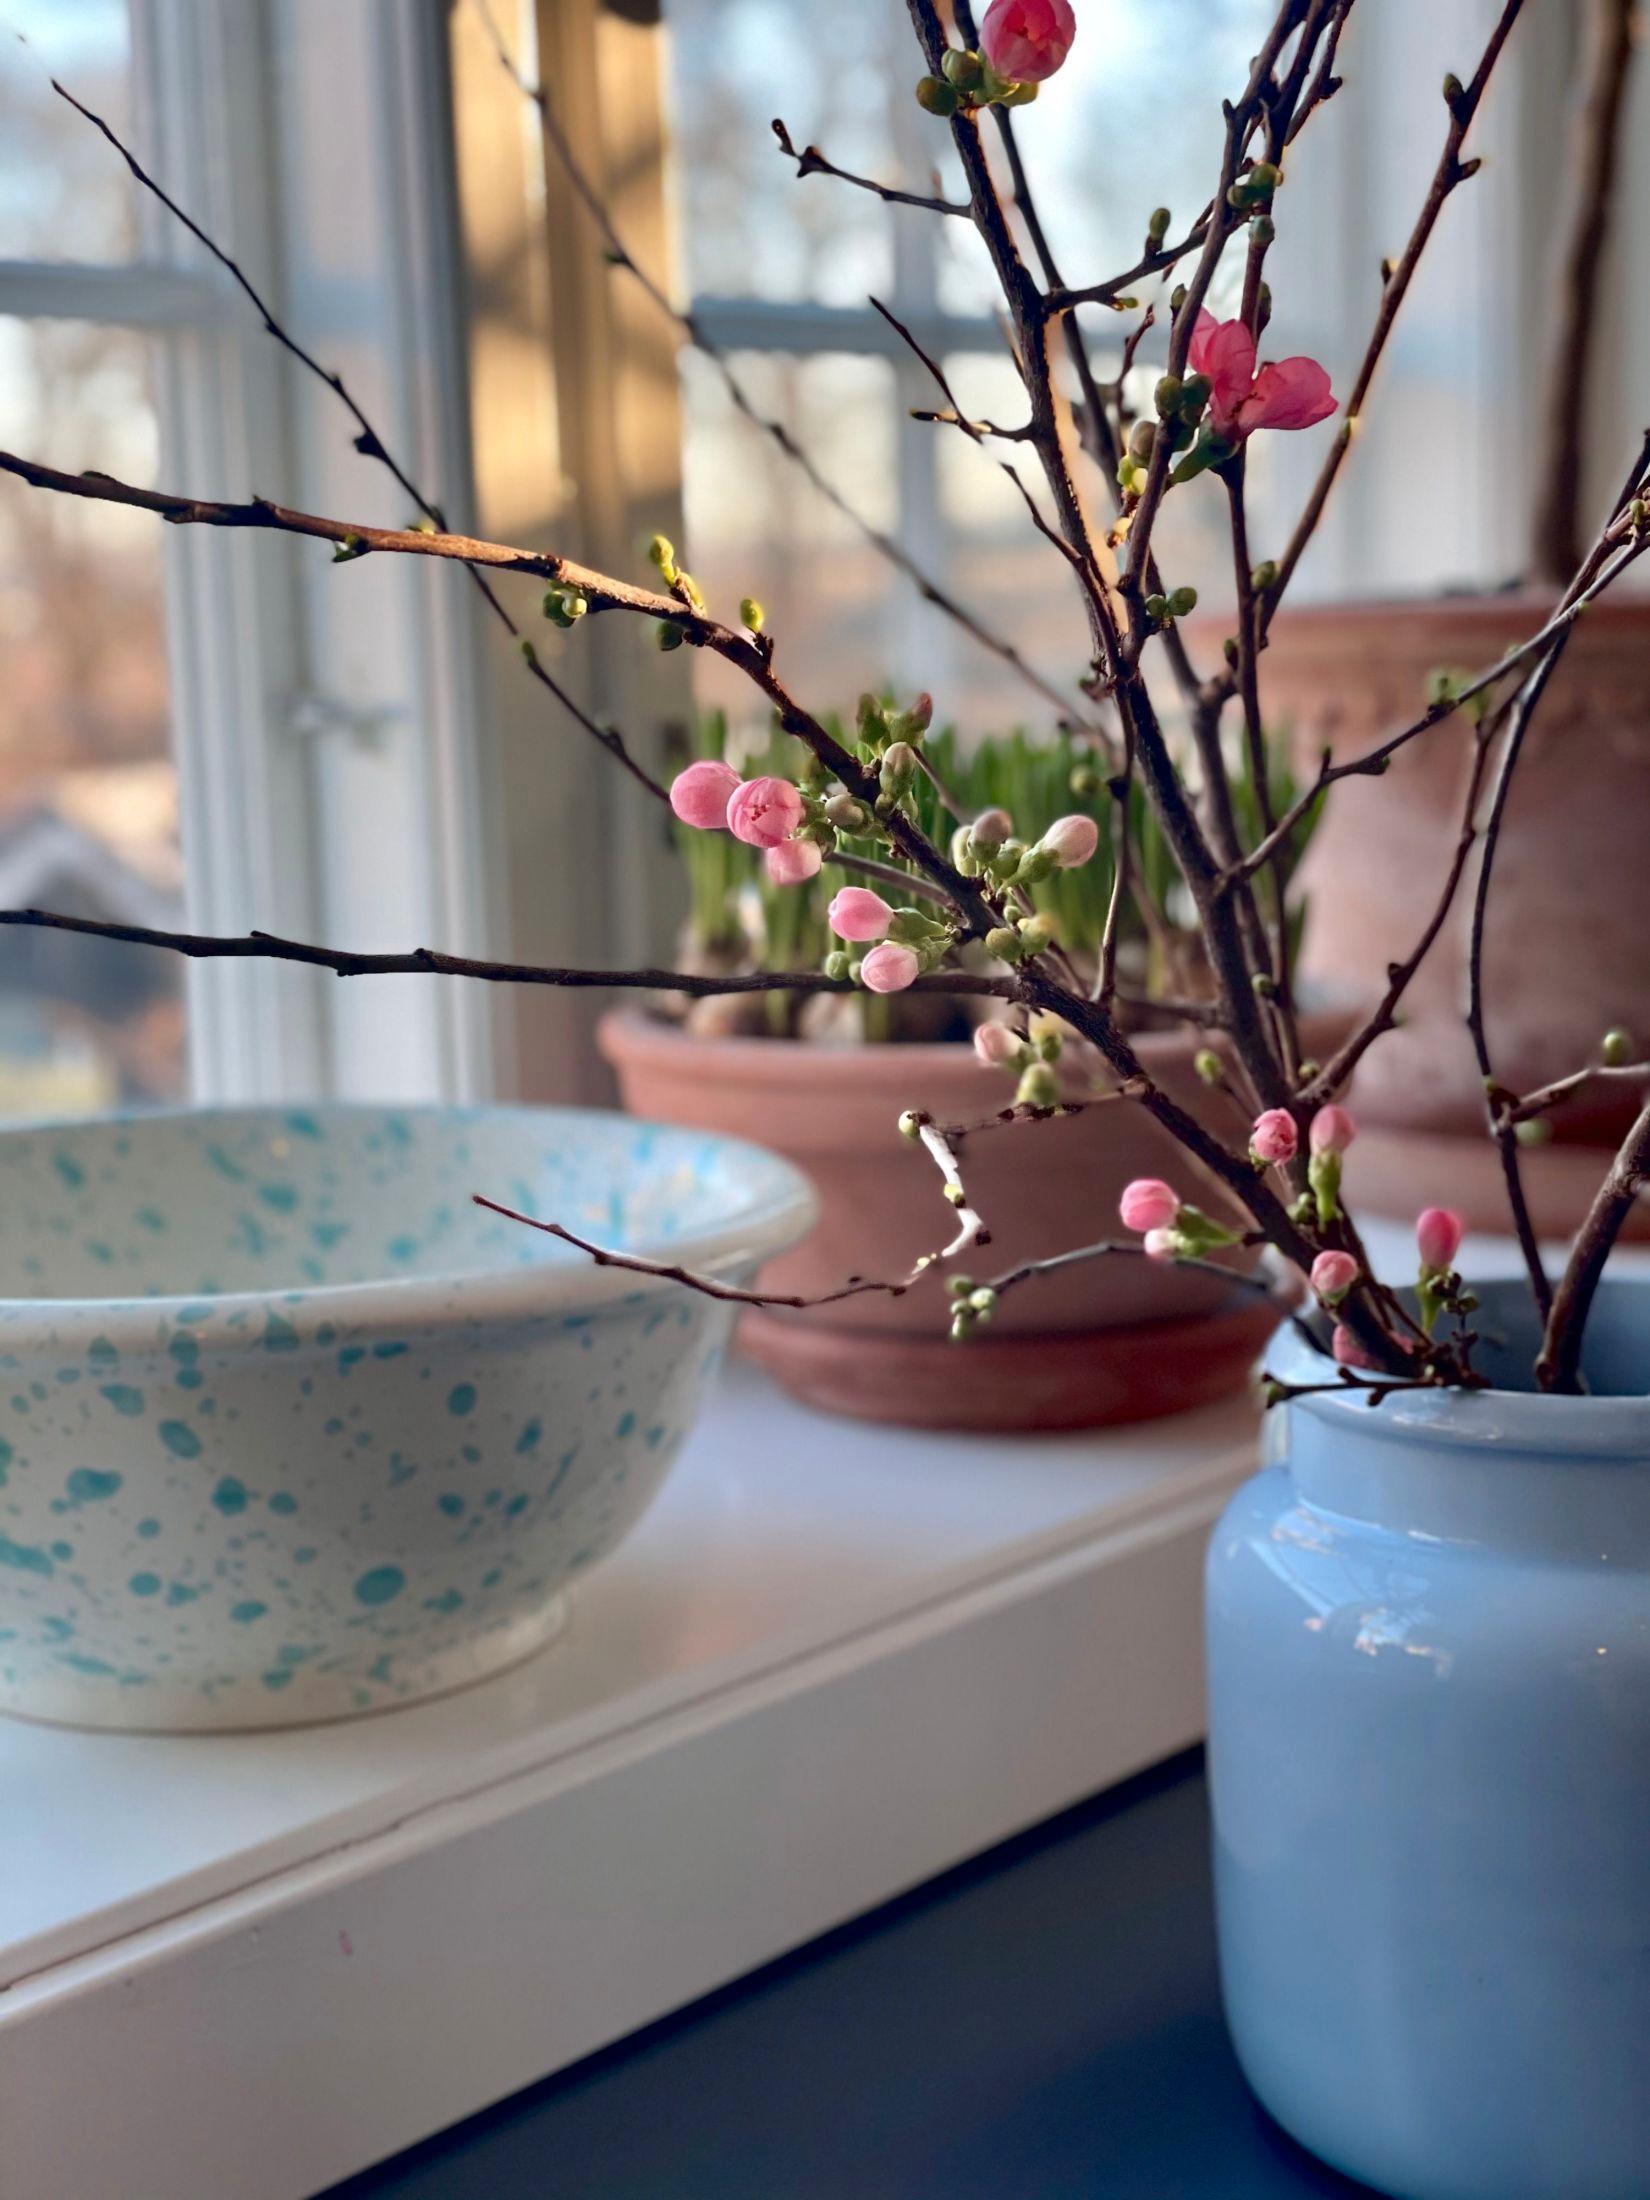 GRENER I VASE: Blomstergrenser i vase gir en frisk og vårlig følelse inne allerede nå, tipser Dam. Foto: Privat